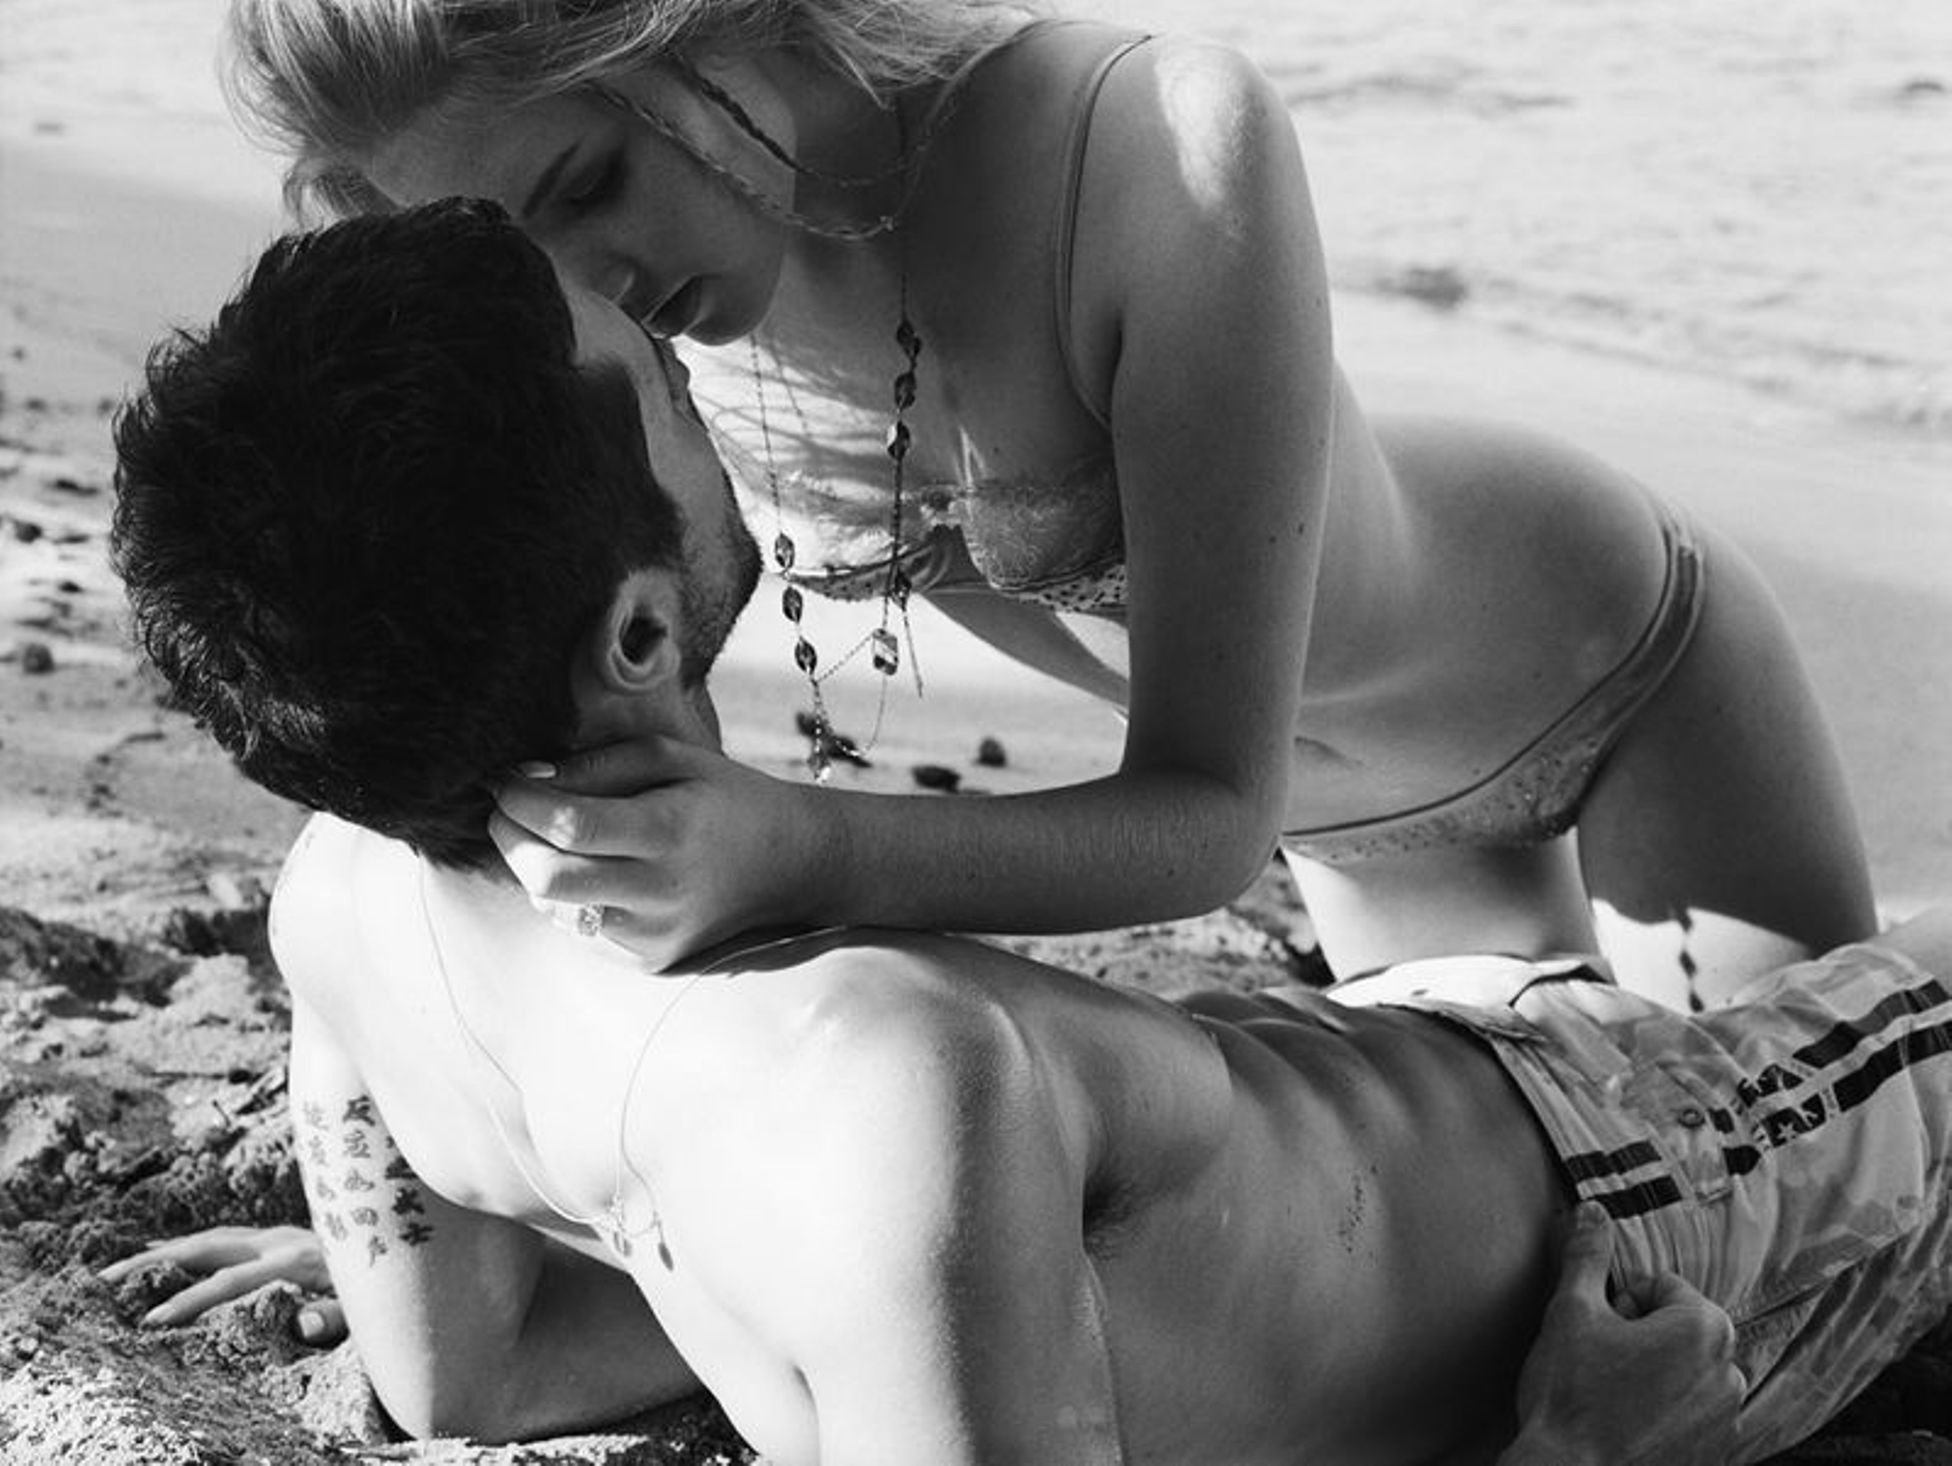 Лове герл. Поцелуи на пляже. Пляж любовь. Романтика любовь нежность страсть. Страсть на пляже.